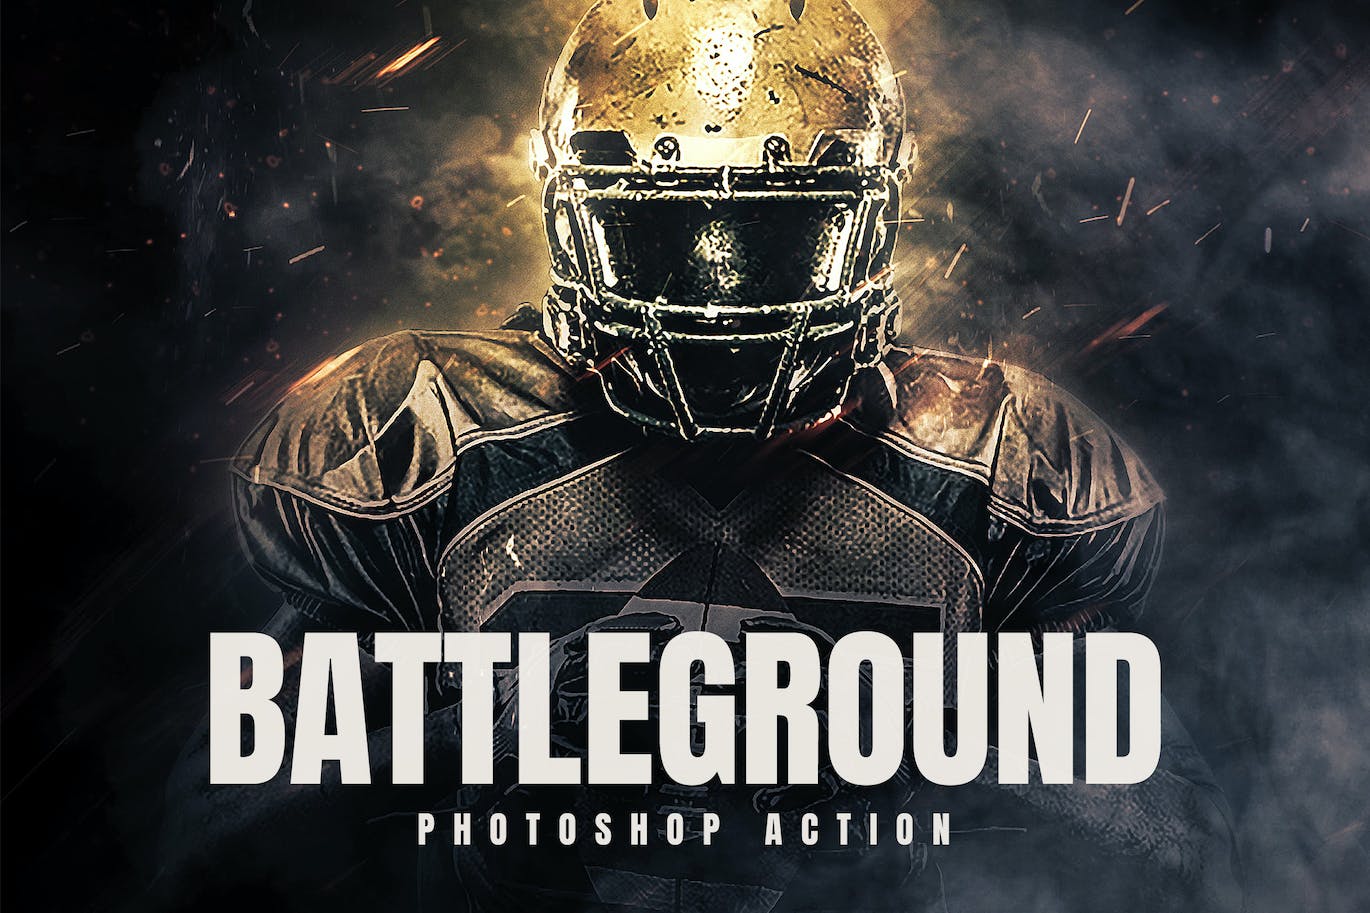 战争战场照片处理效果PS动作模板 Battleground – Photoshop Action 插件预设 第1张